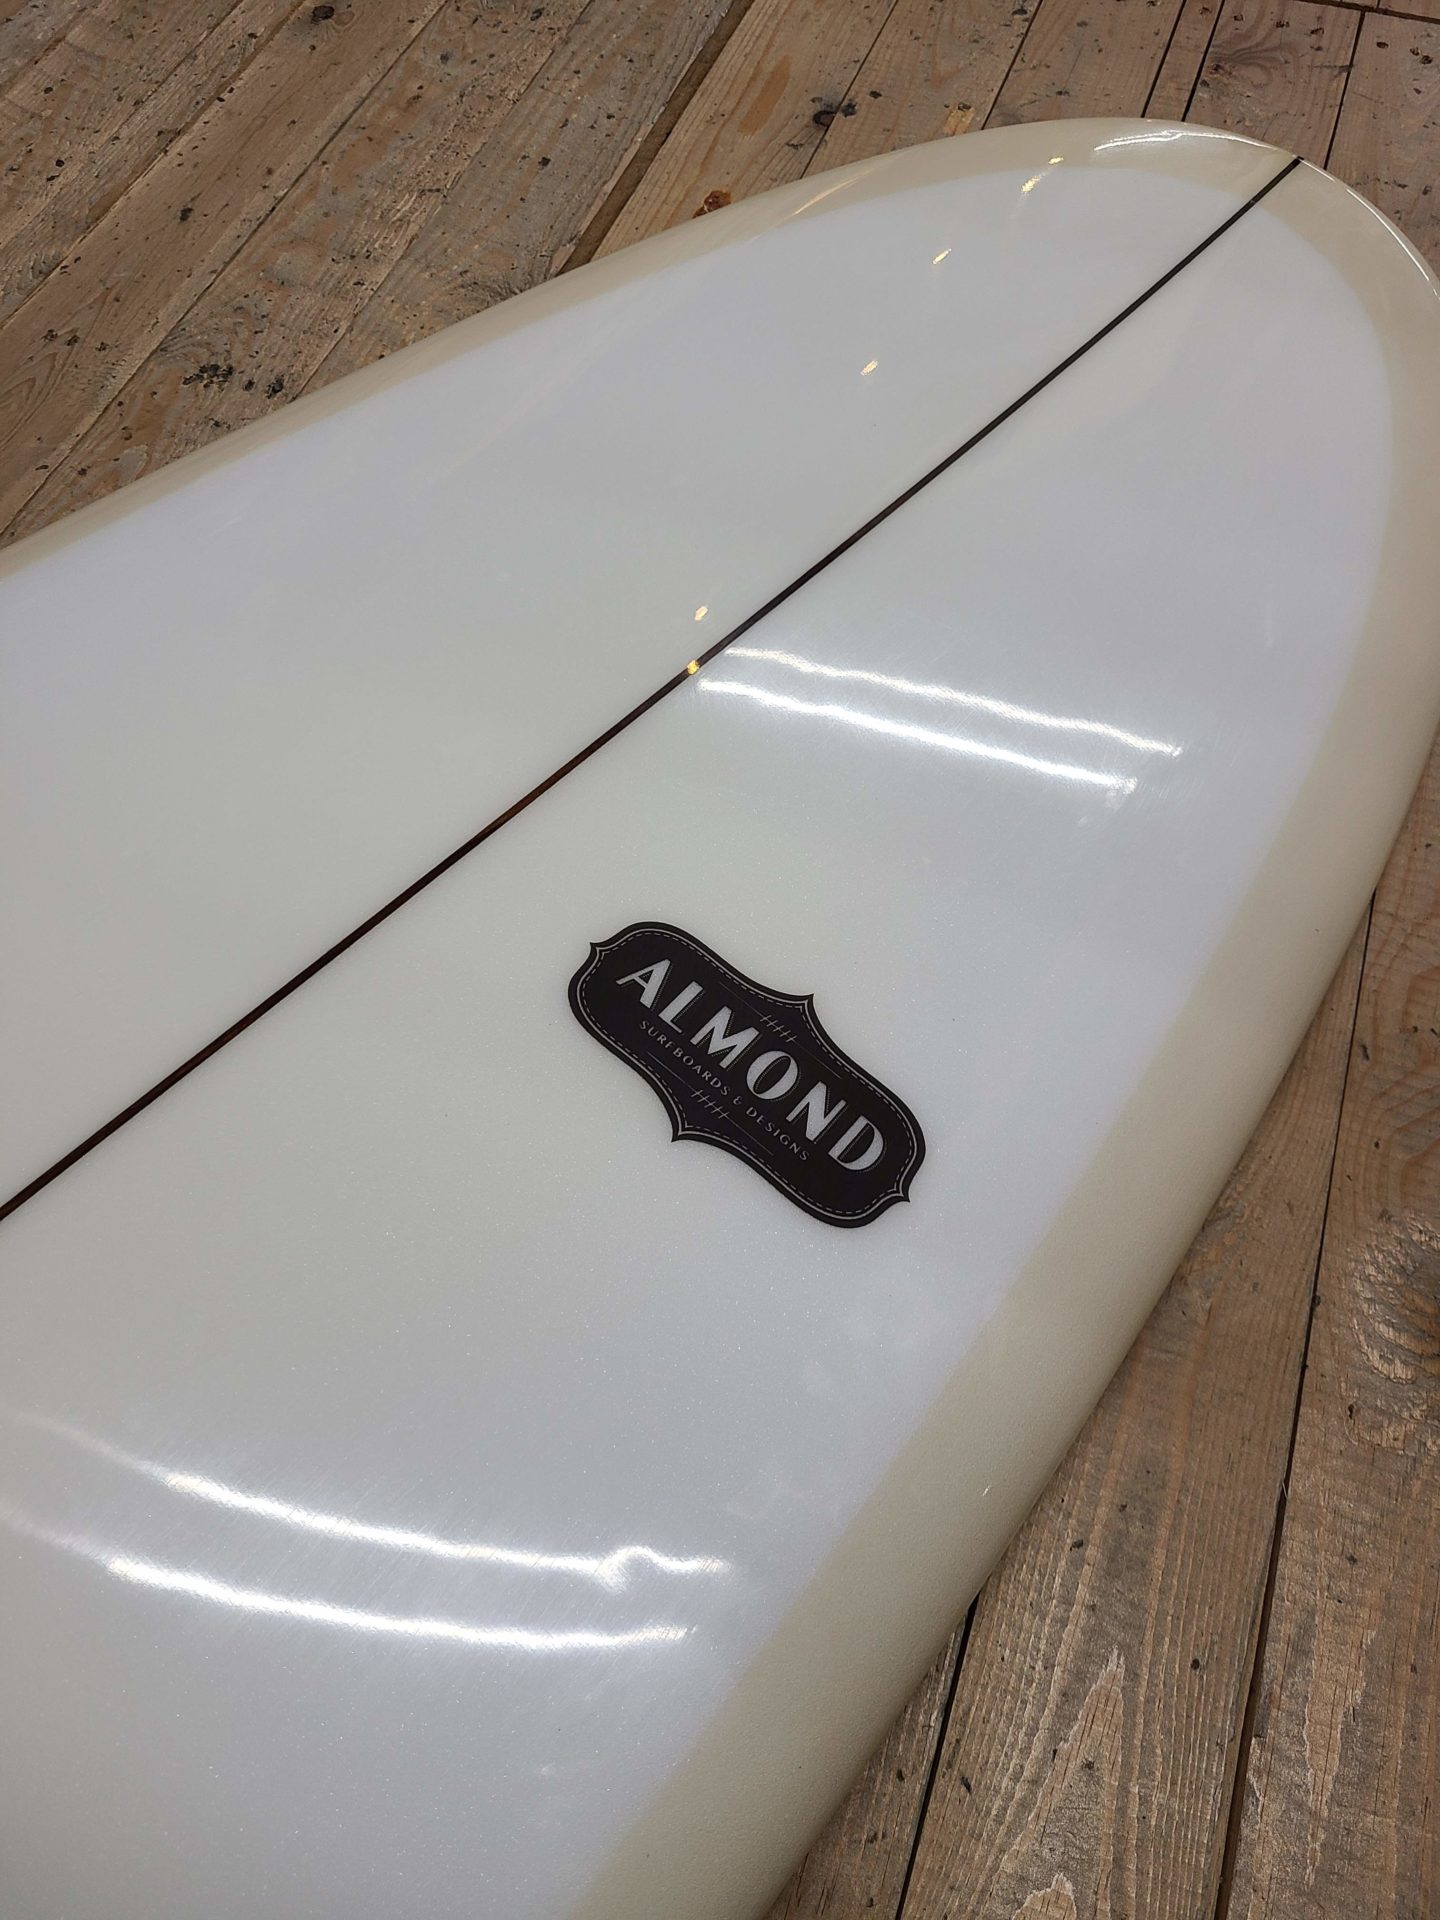 中古サーフボード ALMOND surfboards / リサイクルショップ三喜「宮崎 